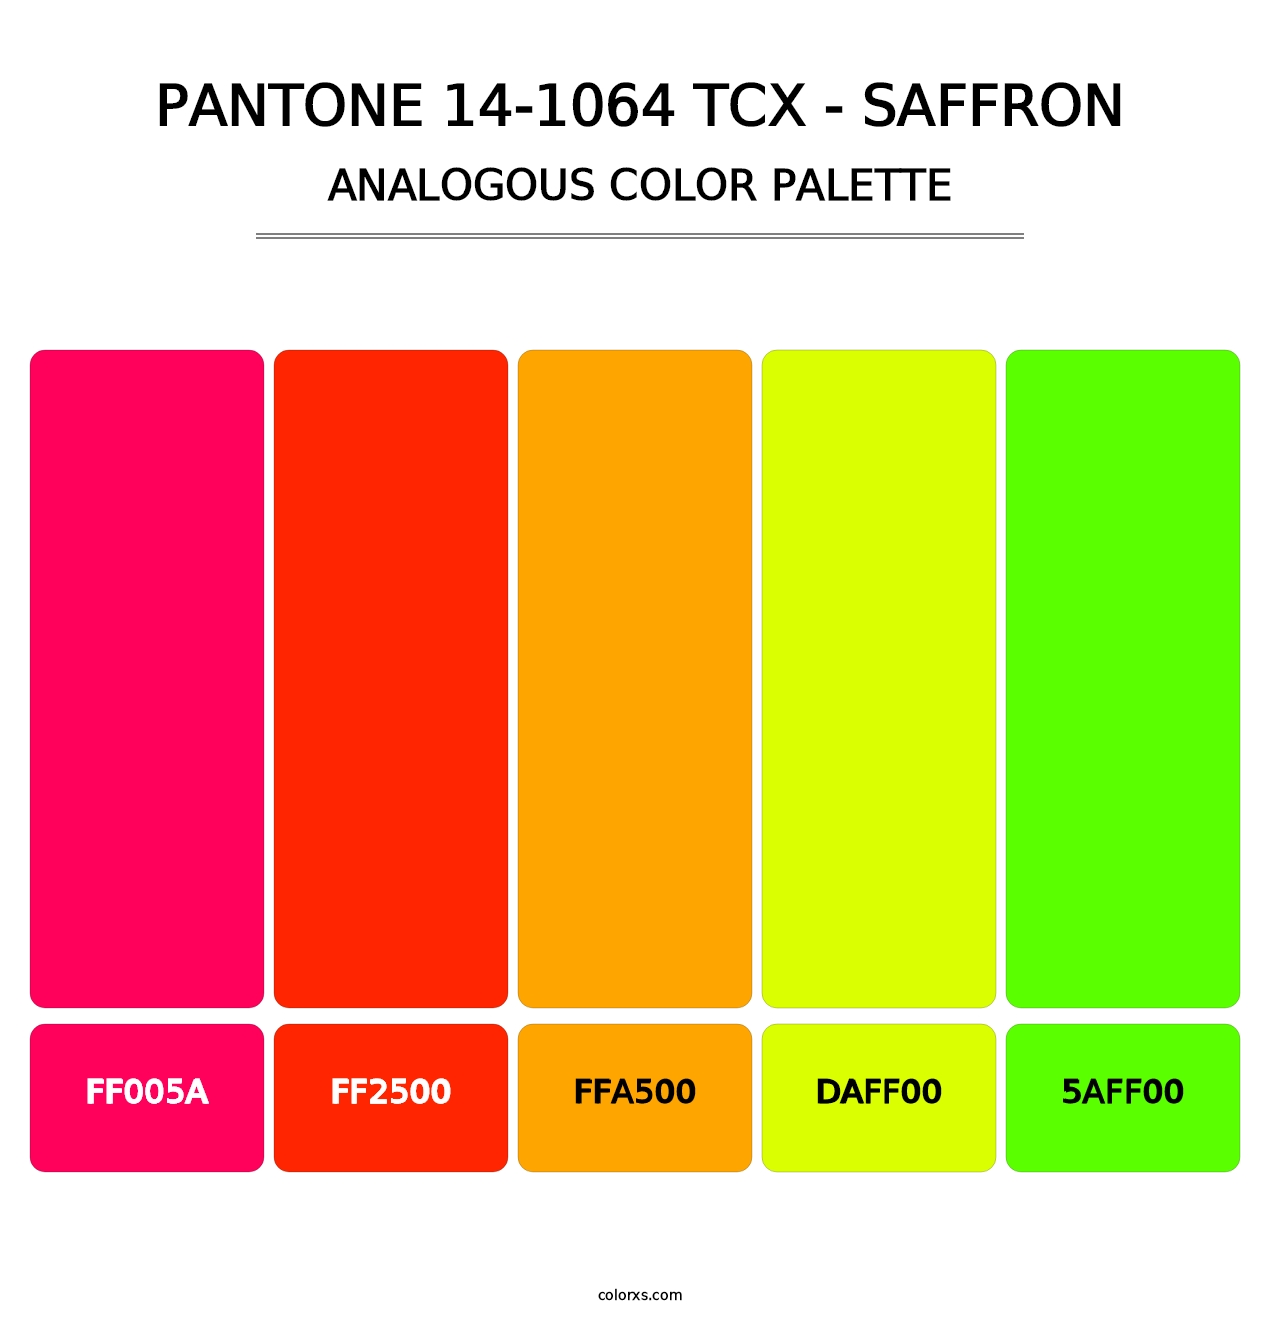 PANTONE 14-1064 TCX - Saffron - Analogous Color Palette